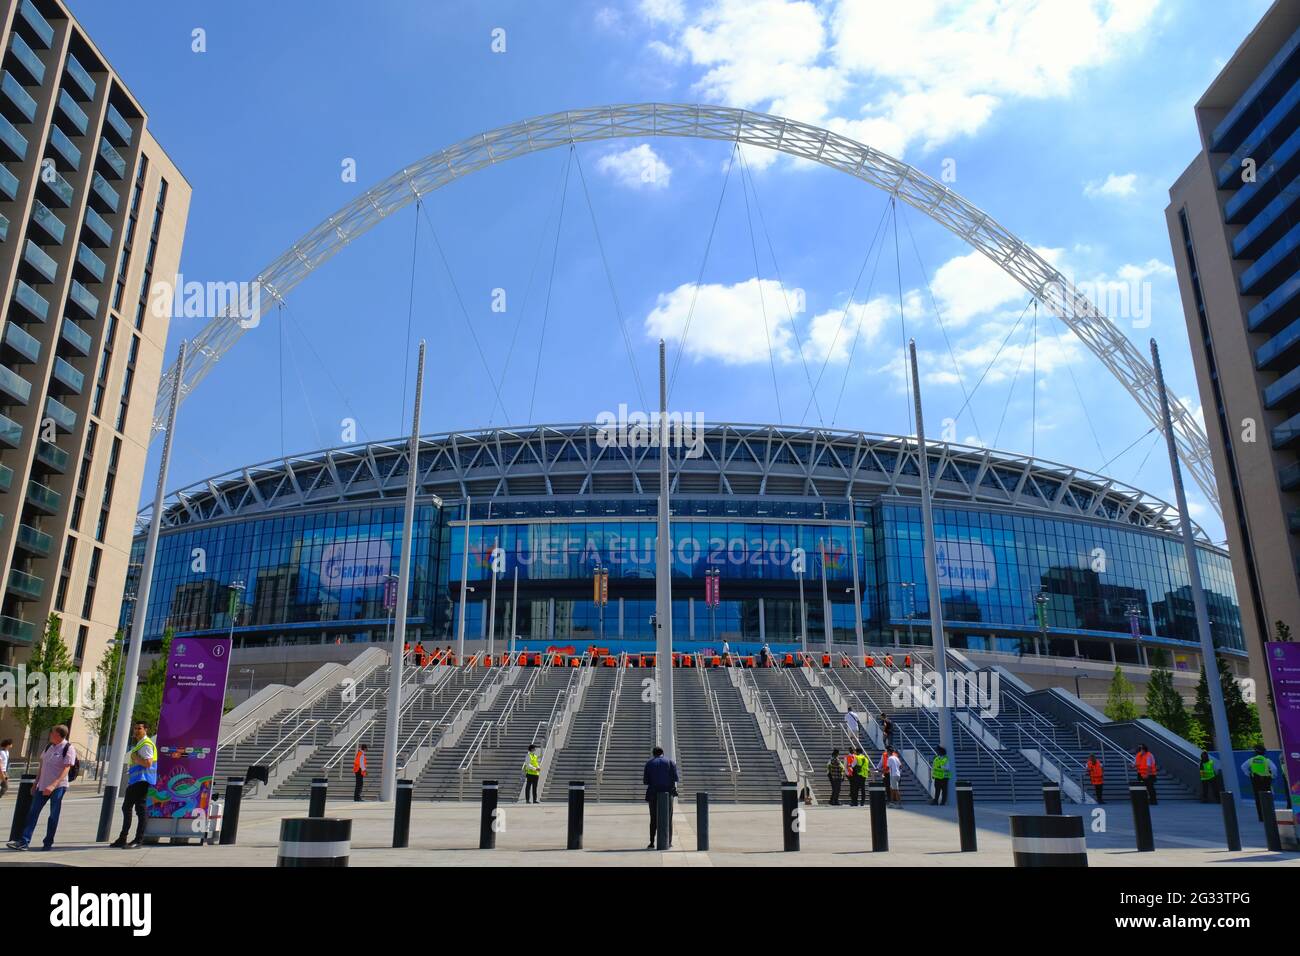 Londra, Regno Unito. L'esterno dello stadio di Wembley in una giornata di sole. "Euro 2020" viene visualizzato sul tabellone in quanto il luogo ospita otto partite durante il torneo. Foto Stock